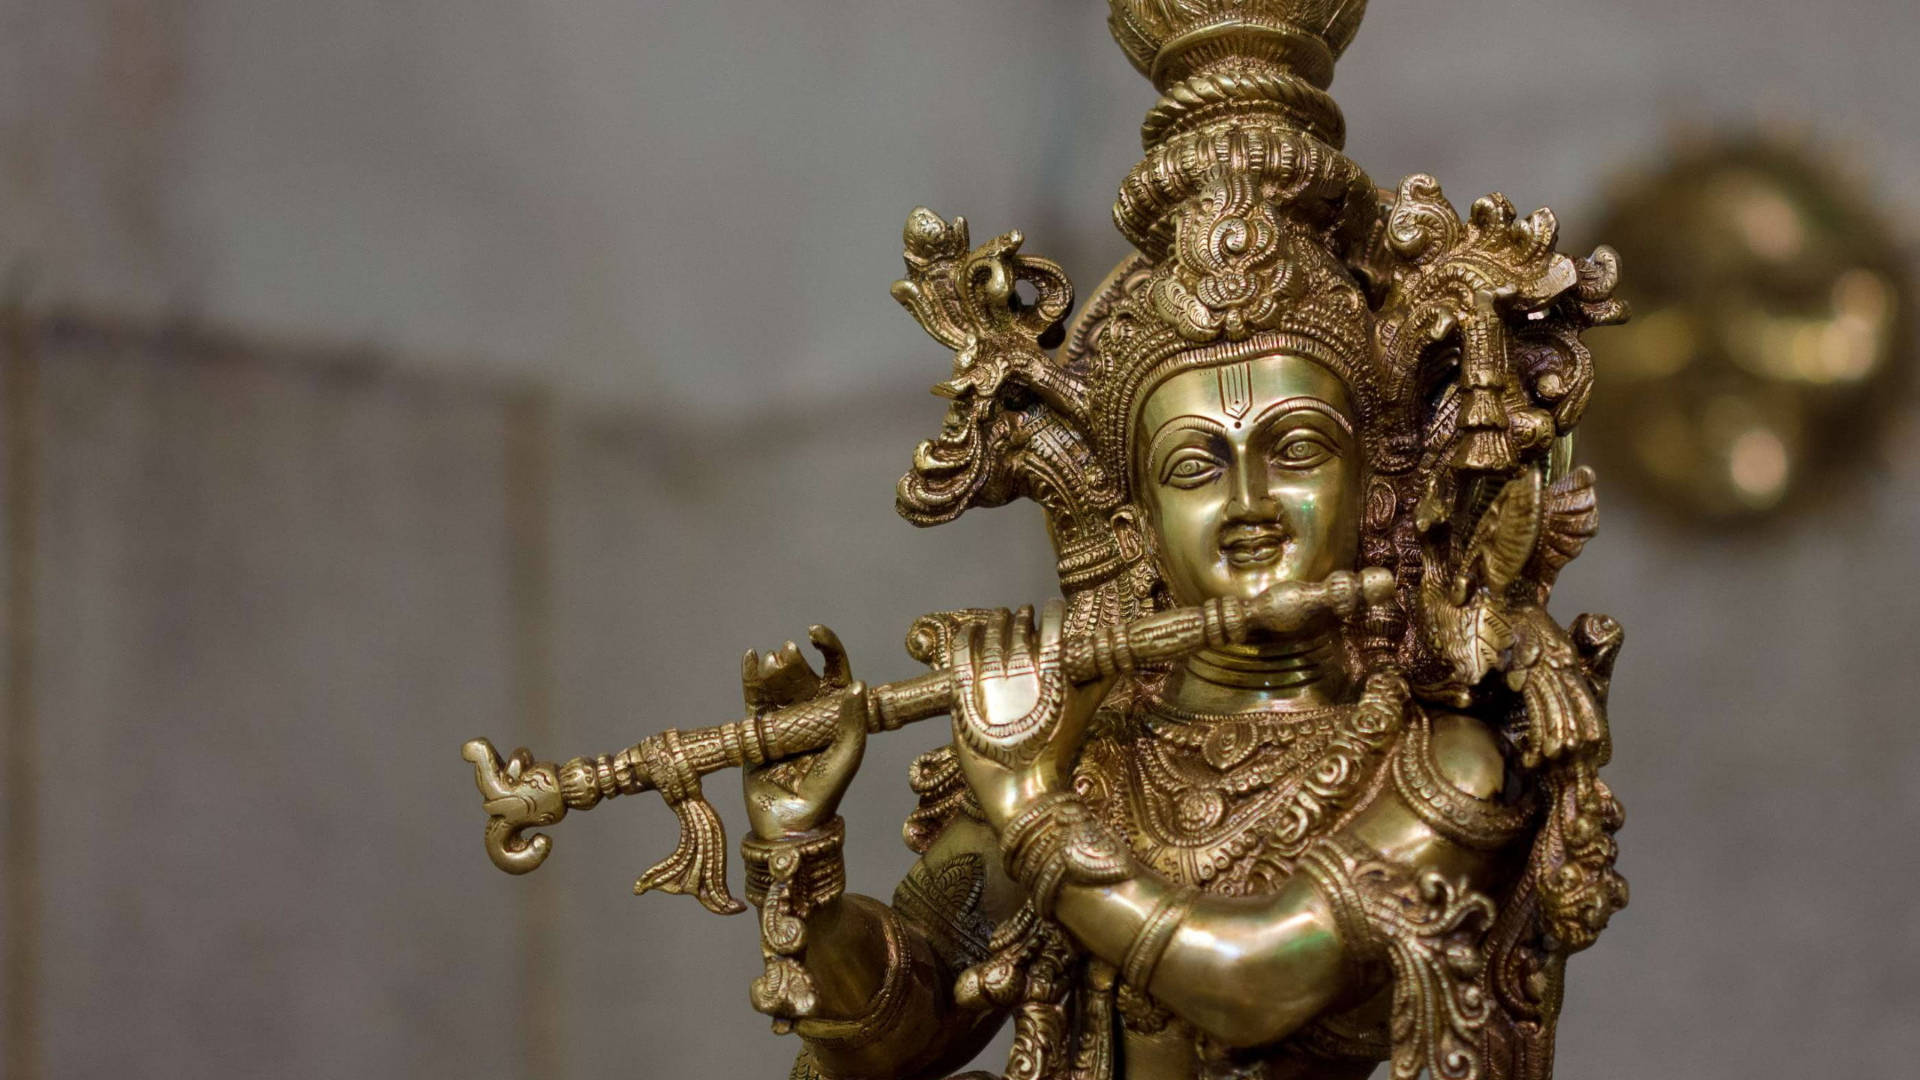 Brassstatue Des Hinduistischen Gottes Krishna Wallpaper